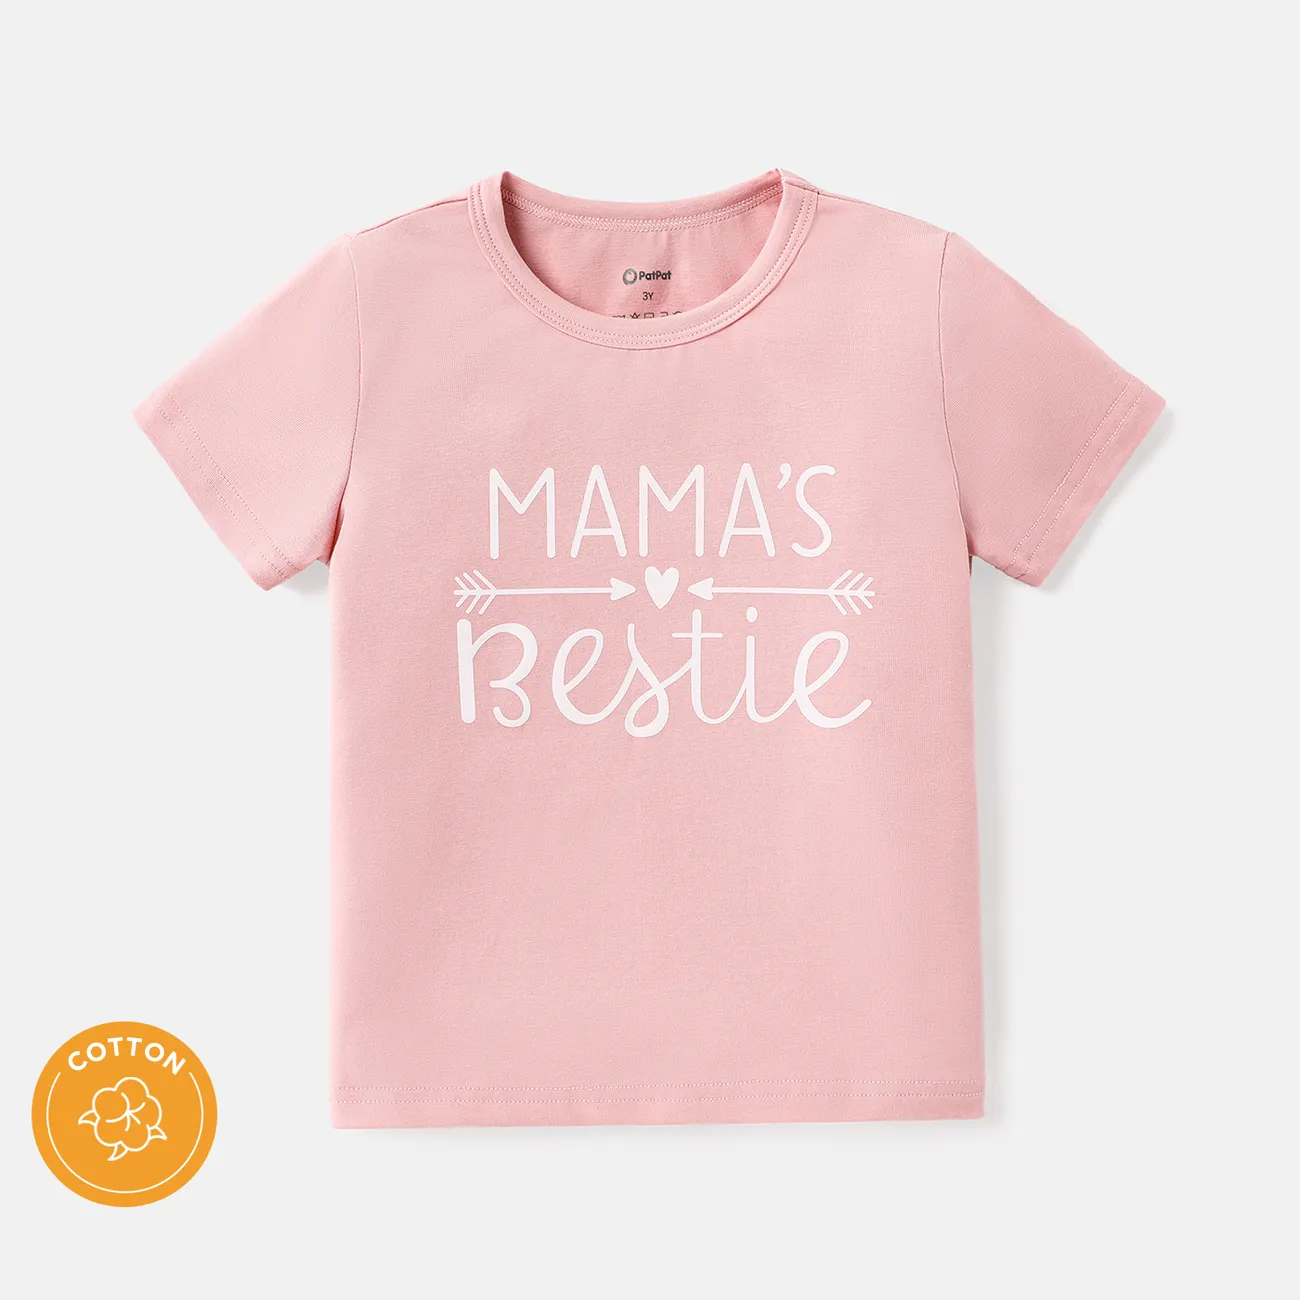 camiseta de algodón de manga corta con estampado de letras para niños pequeños/niños Rosado big image 1